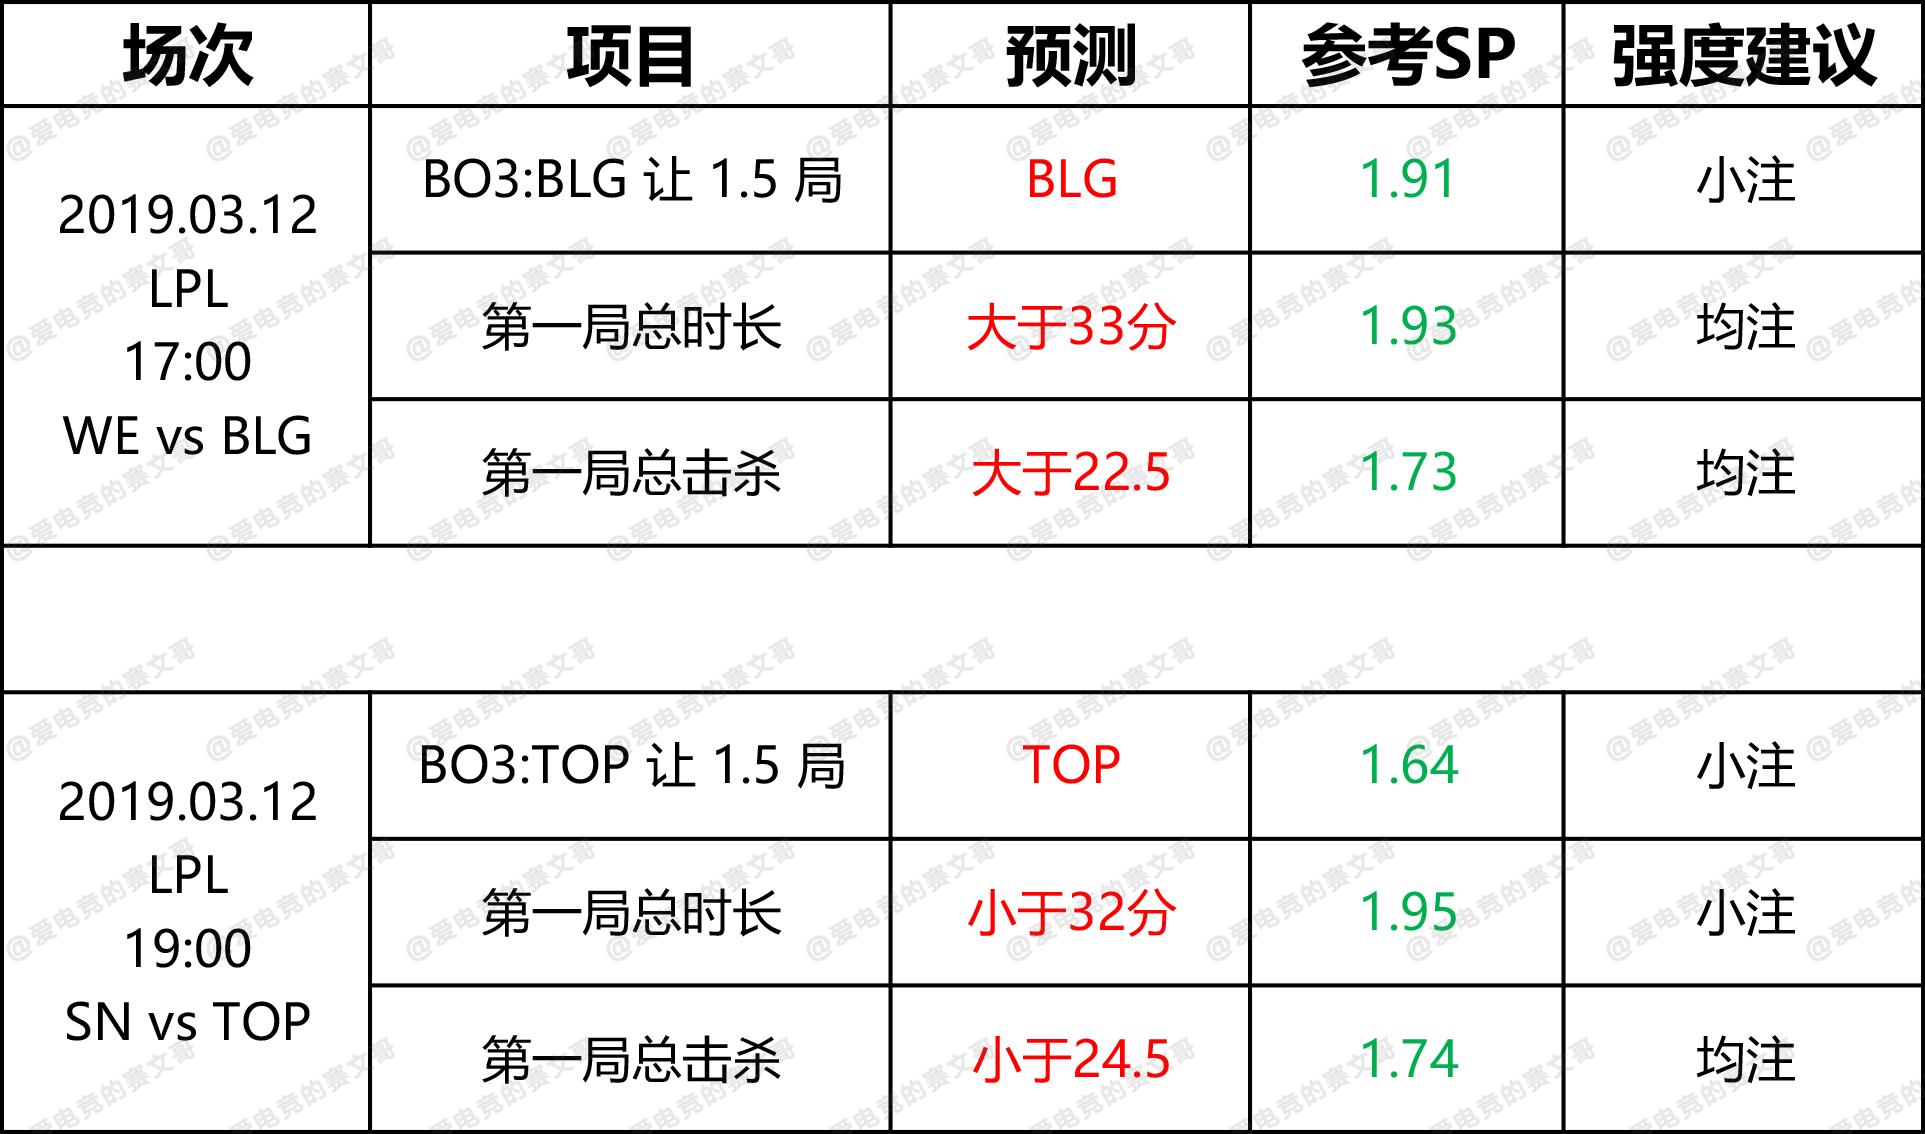 3月12日 DG赛前预测点 WE vs BLG & SN vs TOP